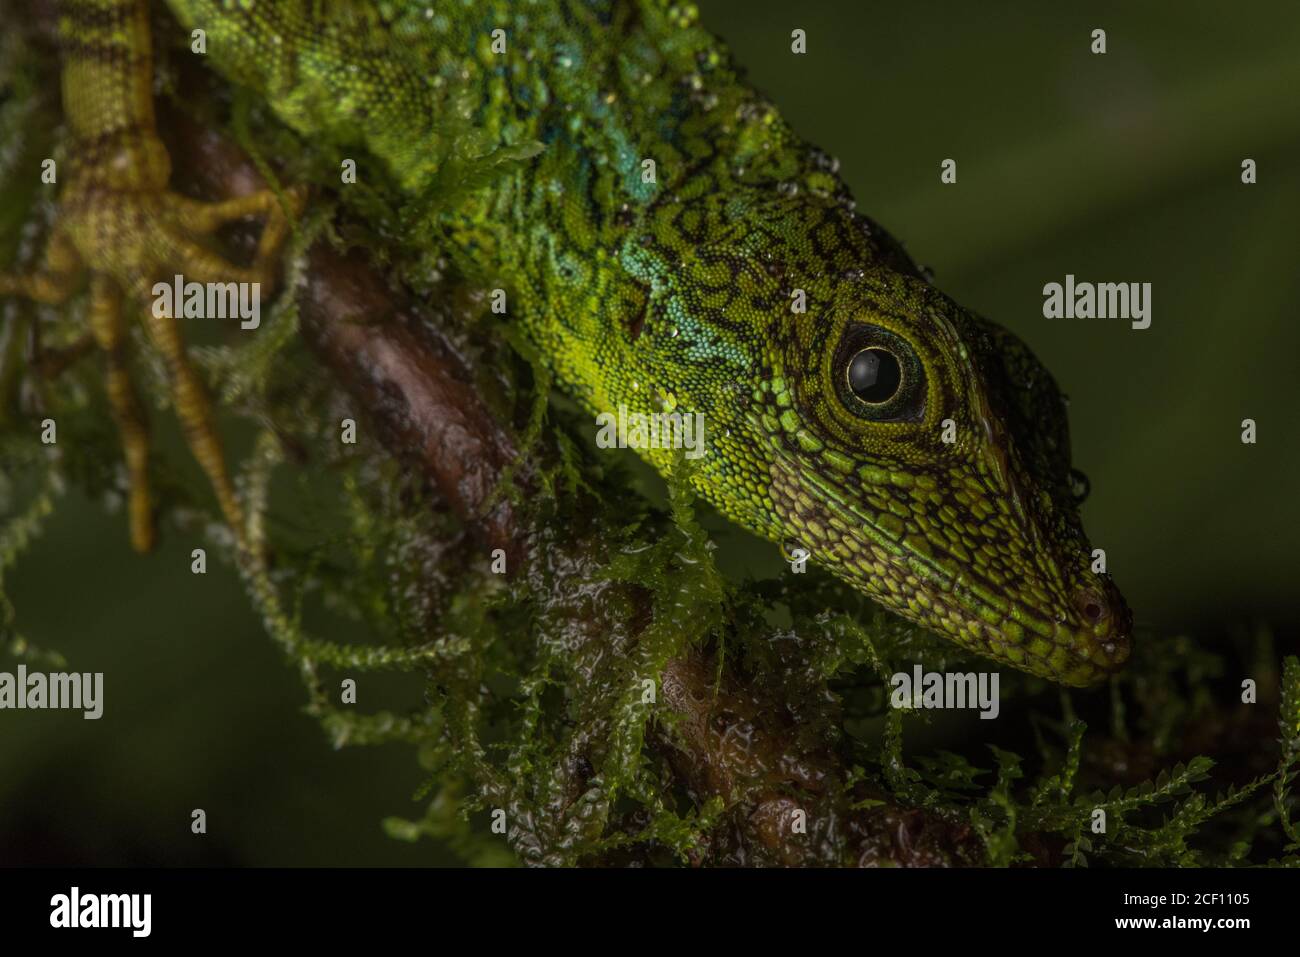 Das Gesicht einer äquatorialen Anole (Anolis aequatorialis) eine Eidechsart, die im ecuadorianischen Regenwald gefunden wird. Stockfoto